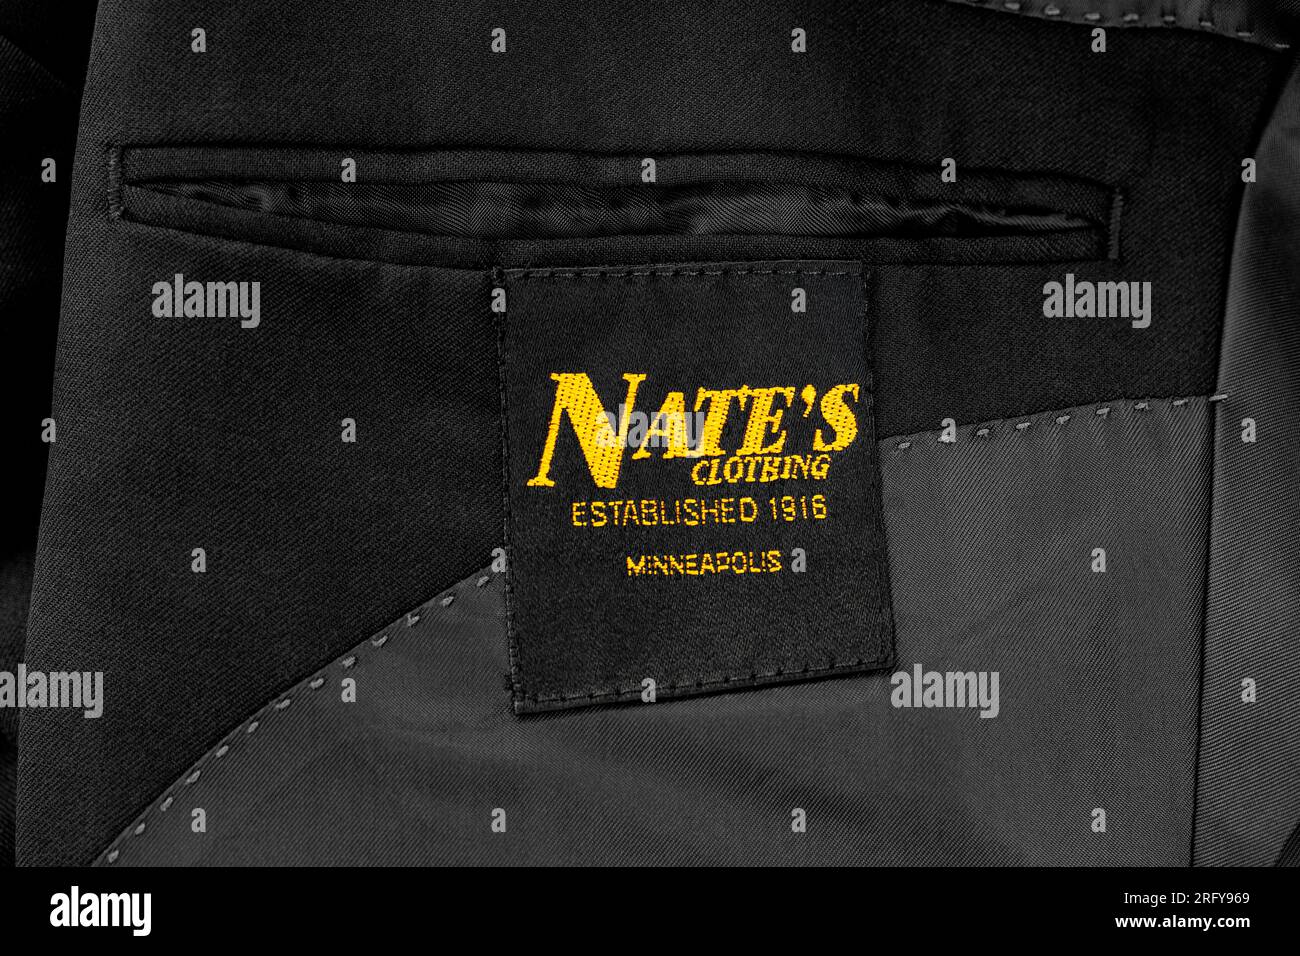 Etichetta di abbigliamento di Nate cucita all'interno di un cappotto sartoriale in lana nera. Nate's era un'azienda a conduzione familiare di Minneapolis fondata da Nathan Witebsky nel 1916. Foto Stock